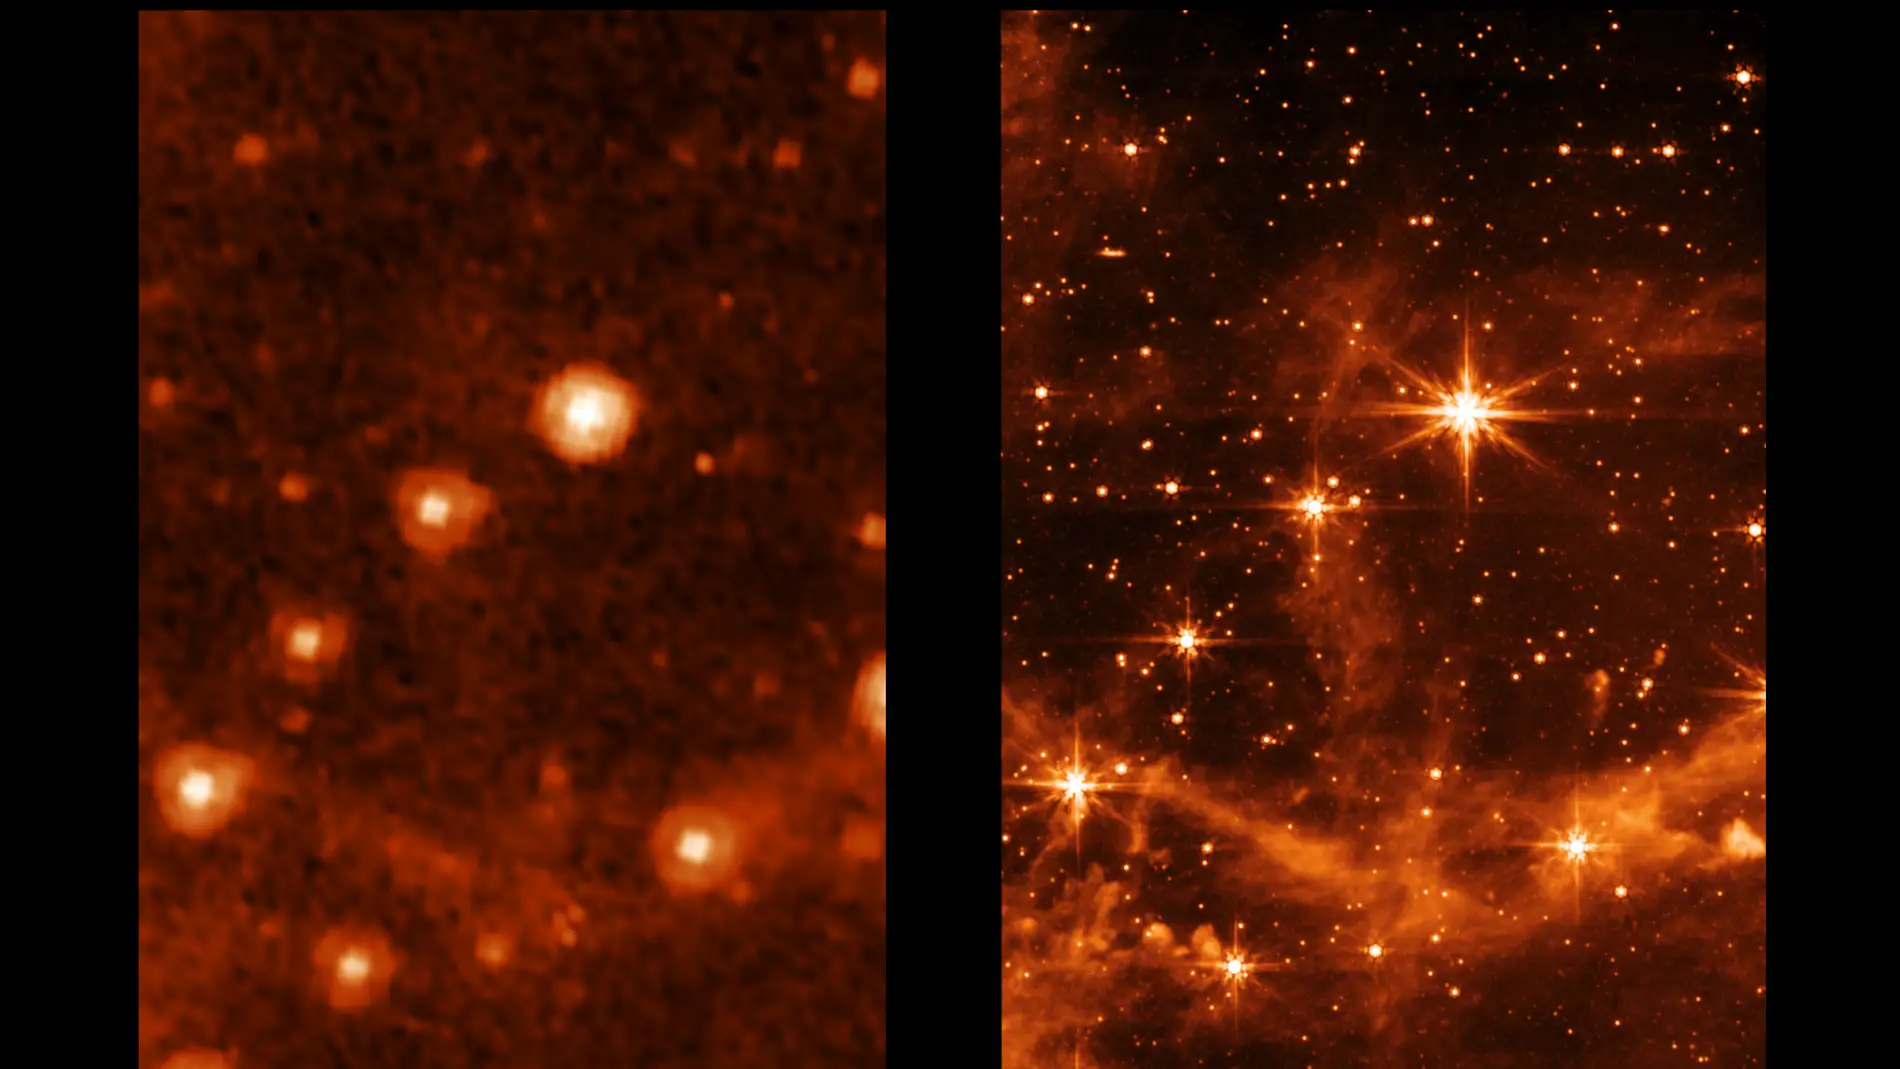 Comparación entre las imágenes infrarrojas obtenidas con los telescopios Spitzer y Webb